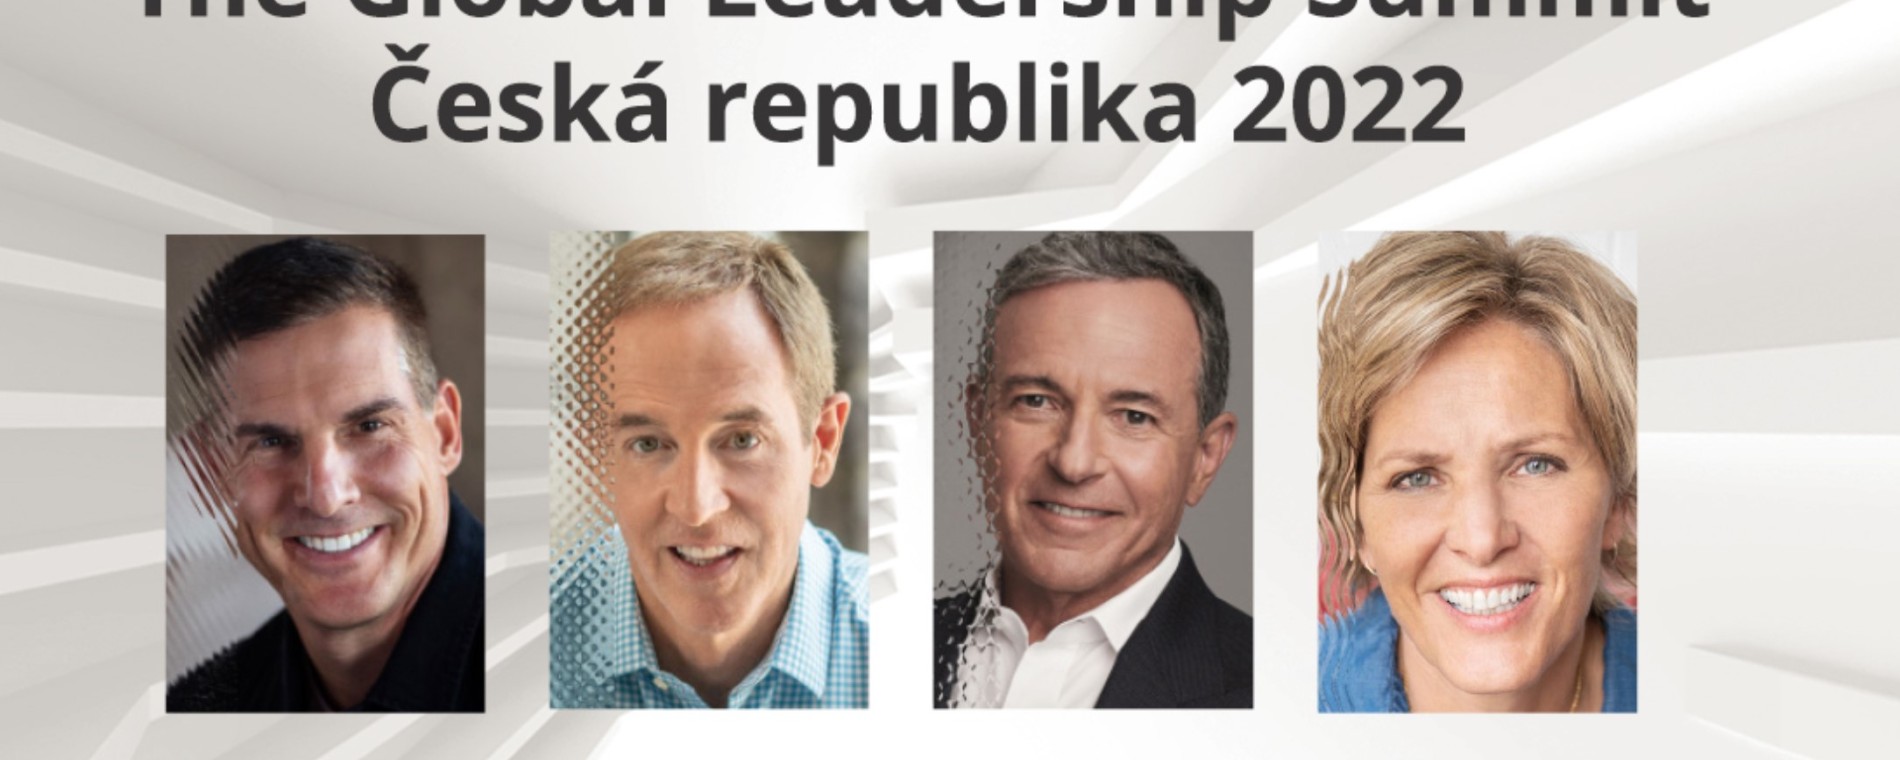 GLS 2022 Česká republika